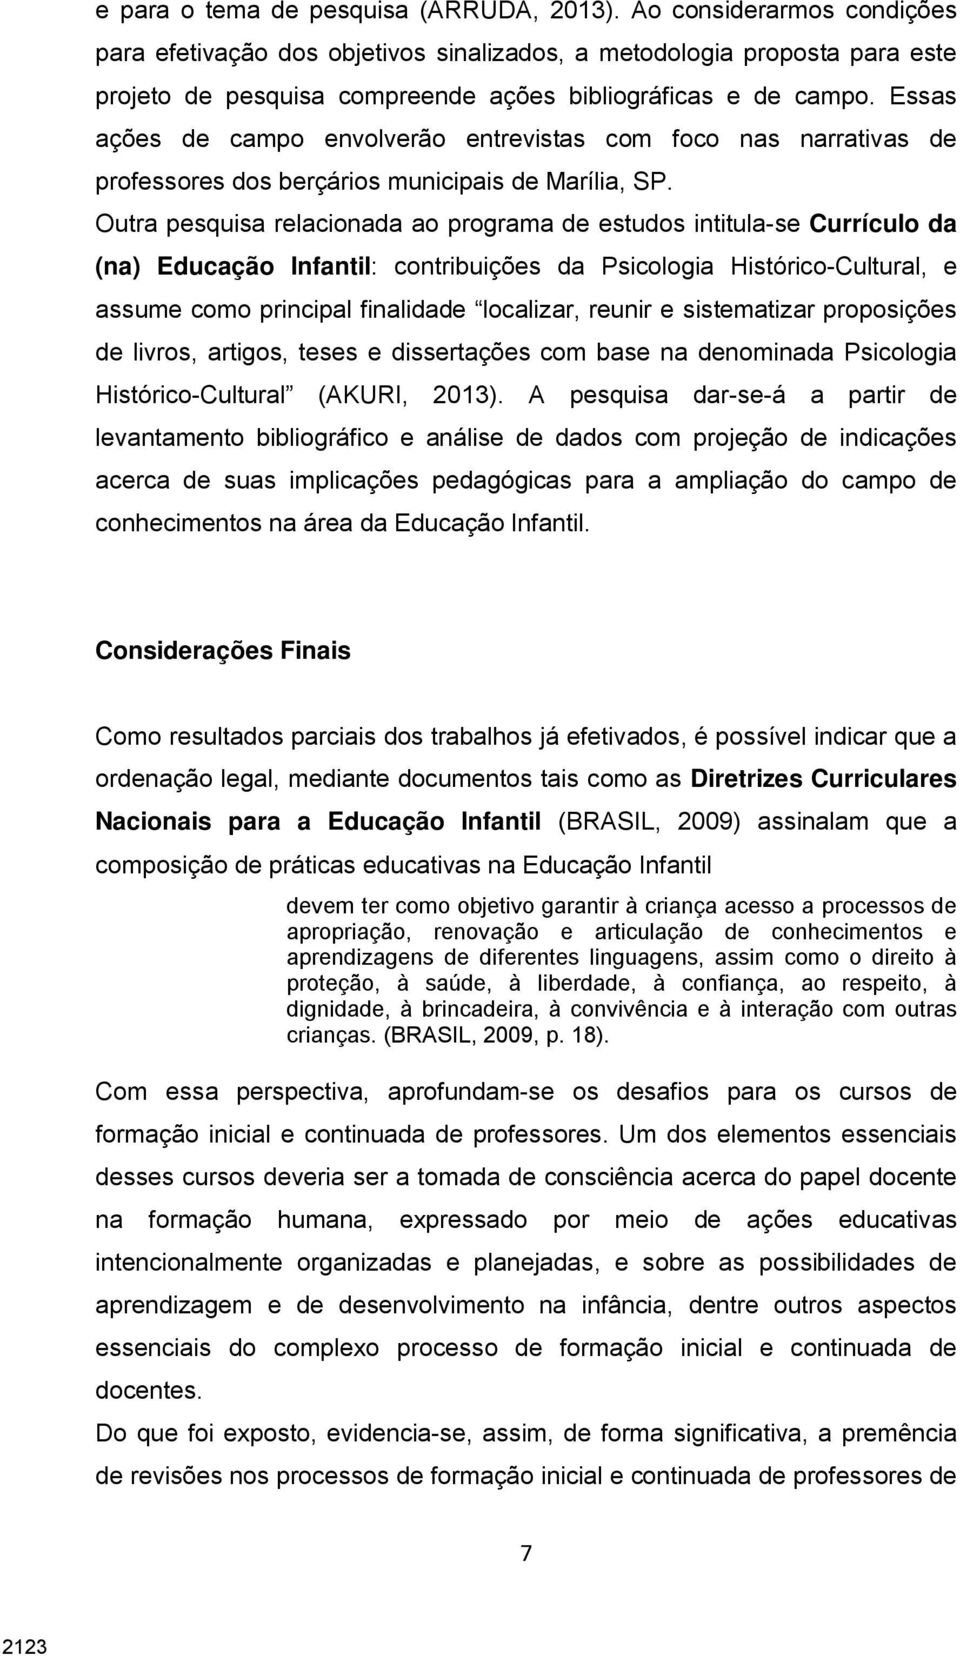 Essas ações de campo envolverão entrevistas com foco nas narrativas de professores dos berçários municipais de Marília, SP.